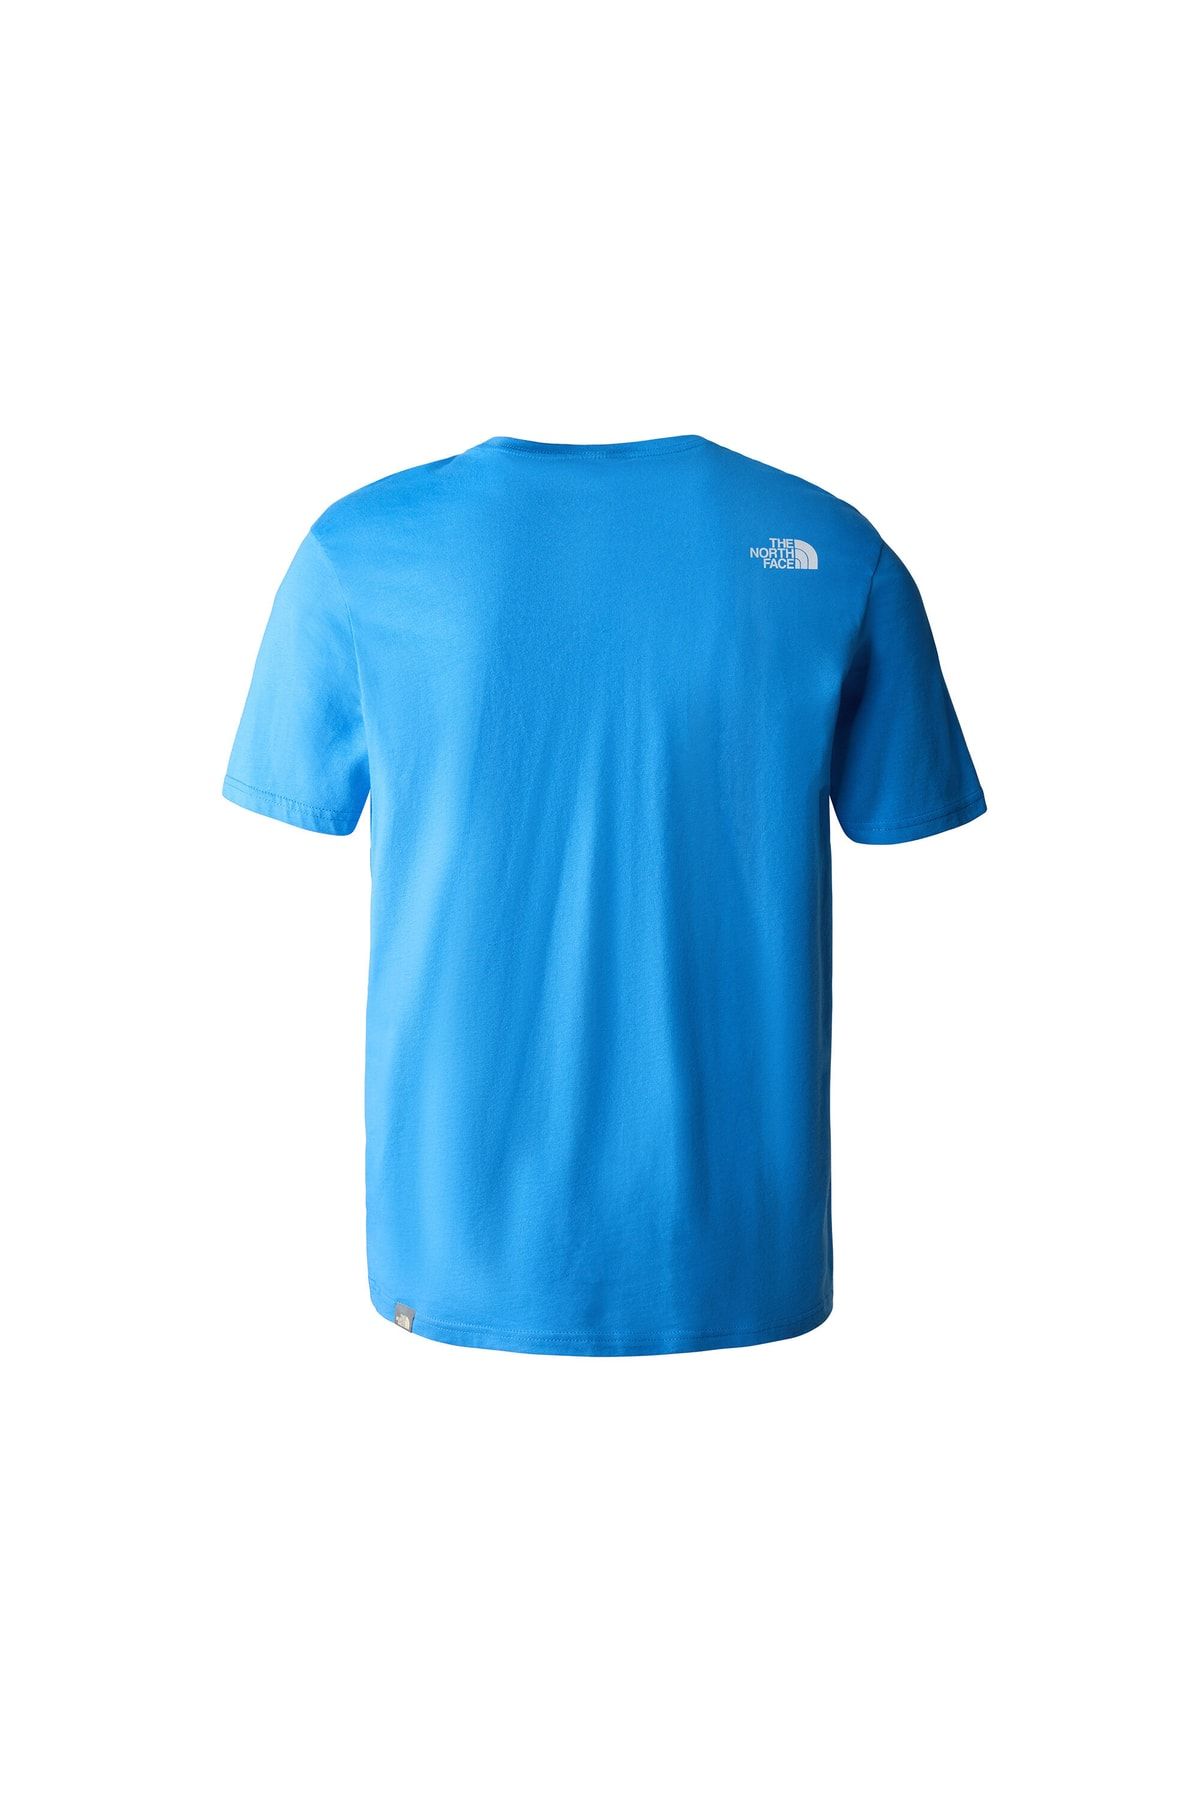 The North Face تی شرت مردانه راحتی NF0A2TX3LV61 آبی